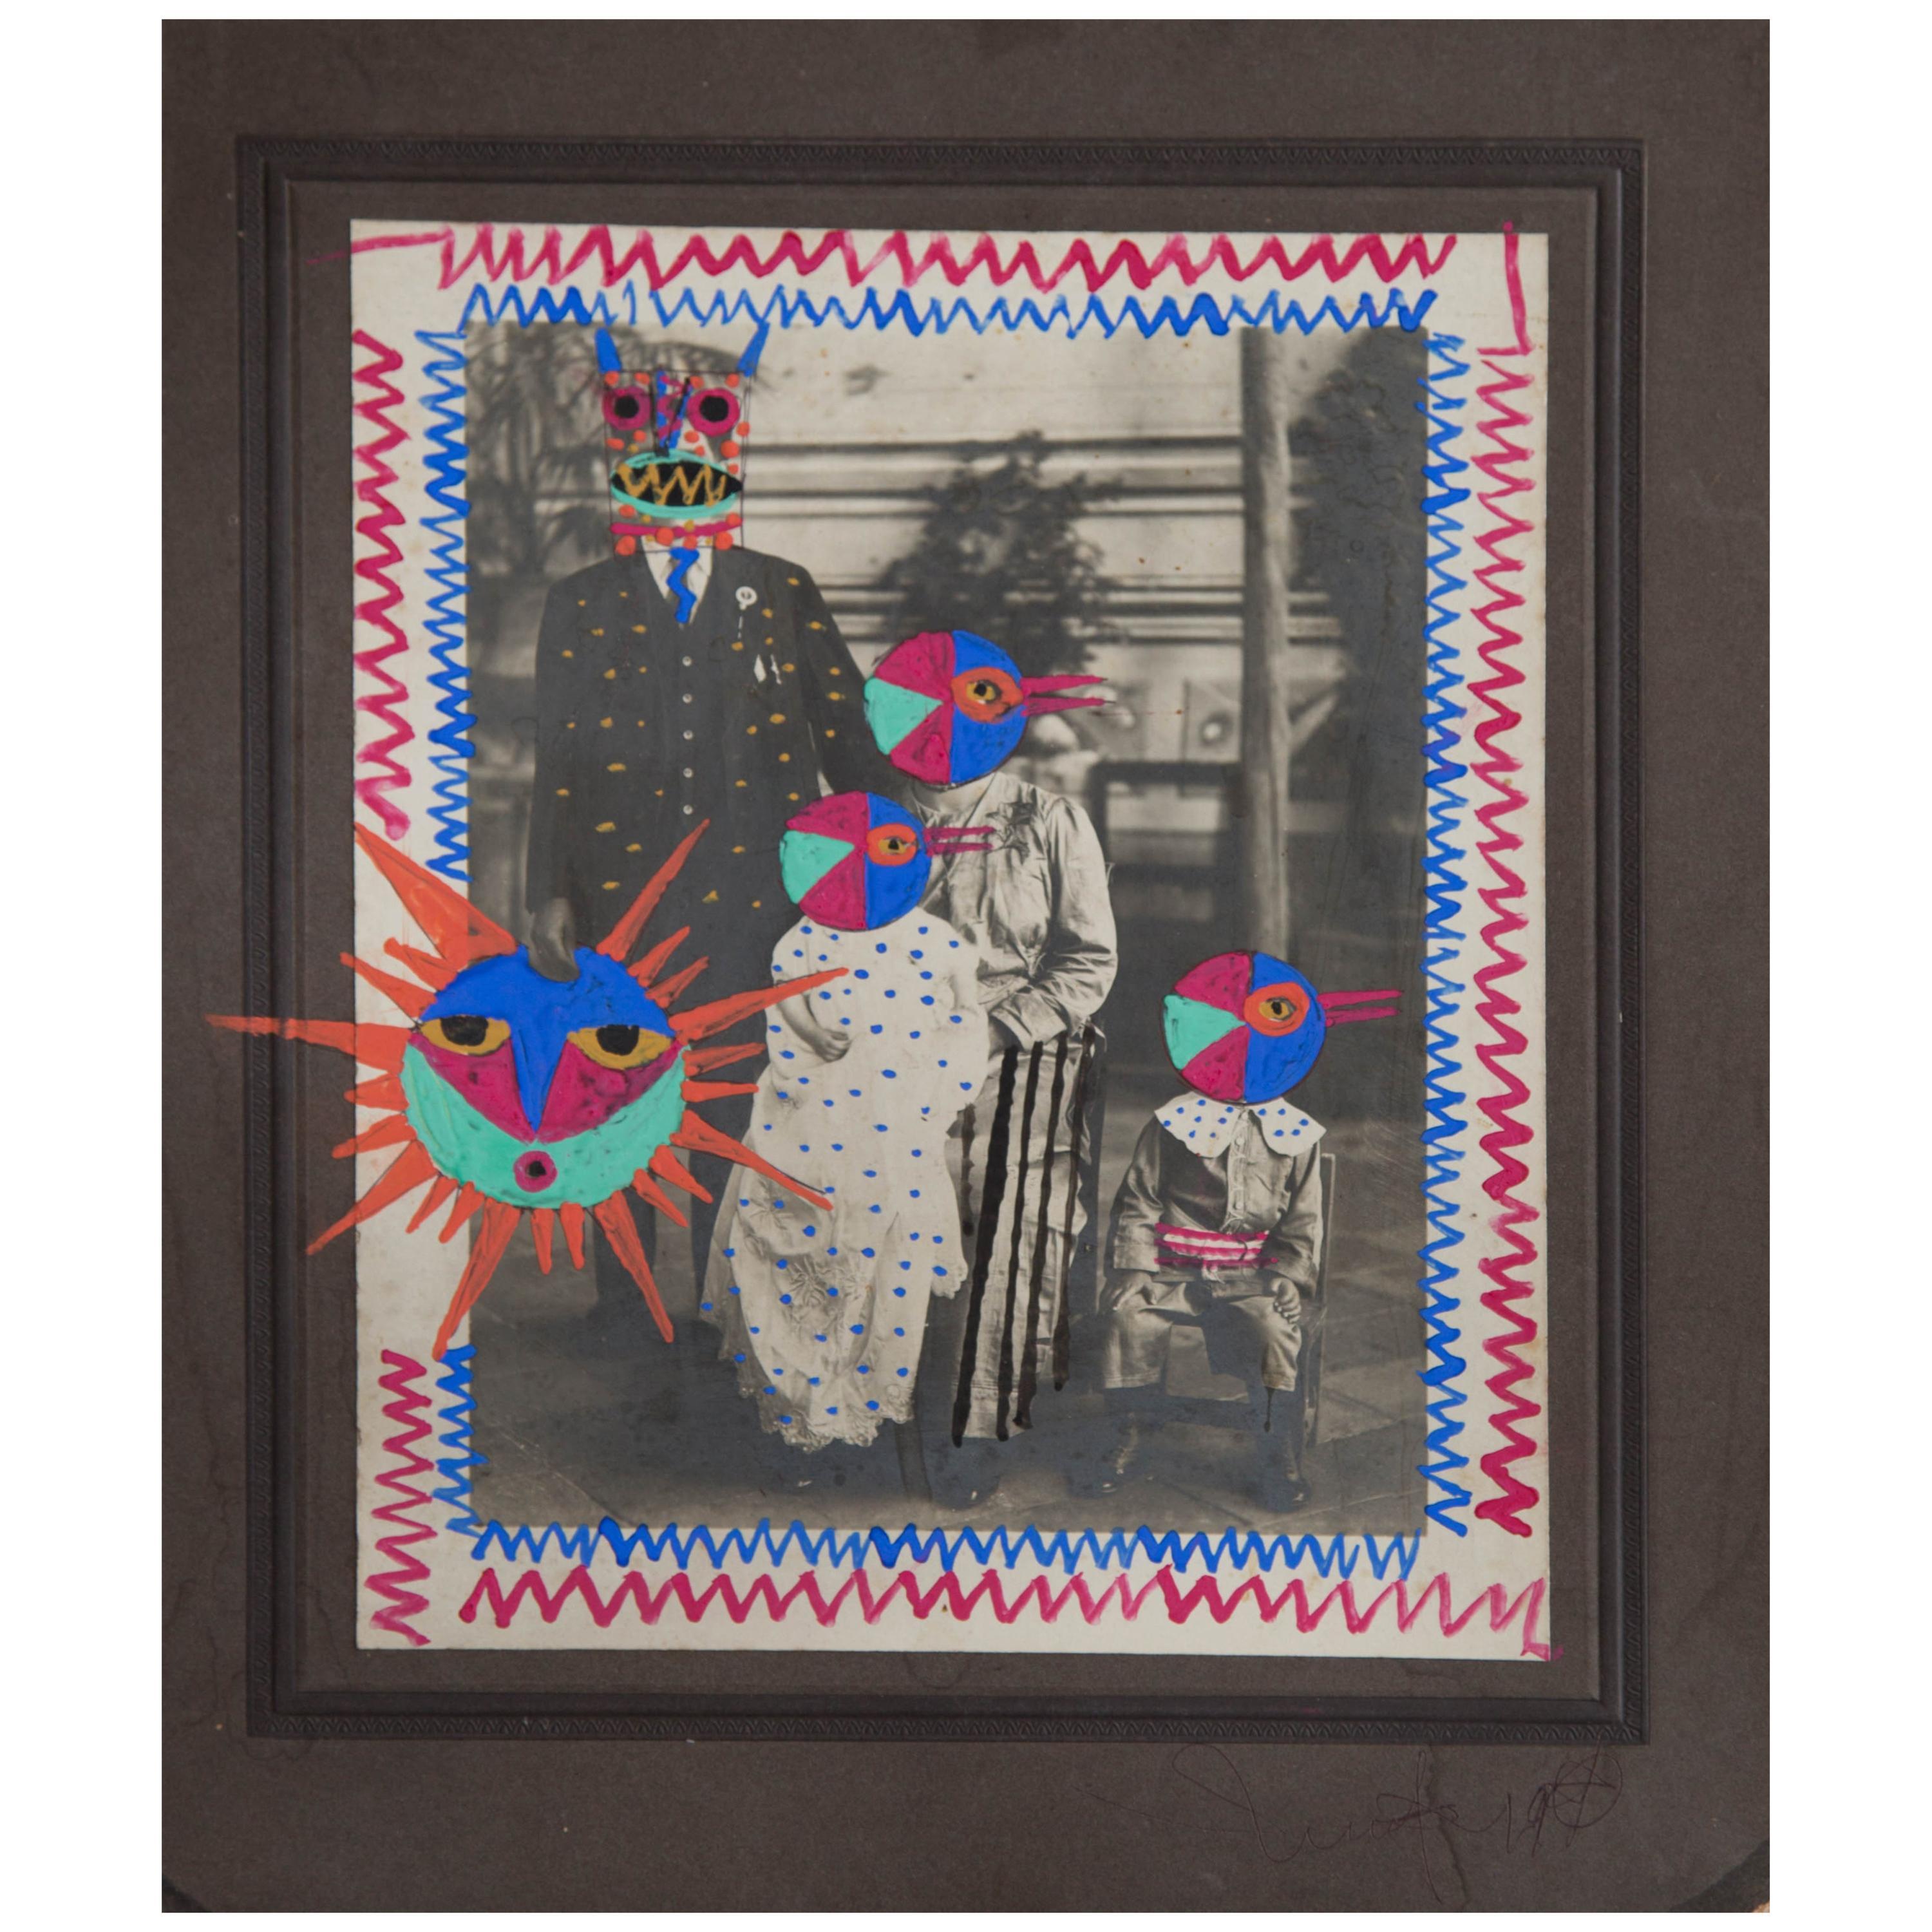 Leobardo Huerta Abstract Photograph - Sun Family. Mixed media vintage photo. Framed